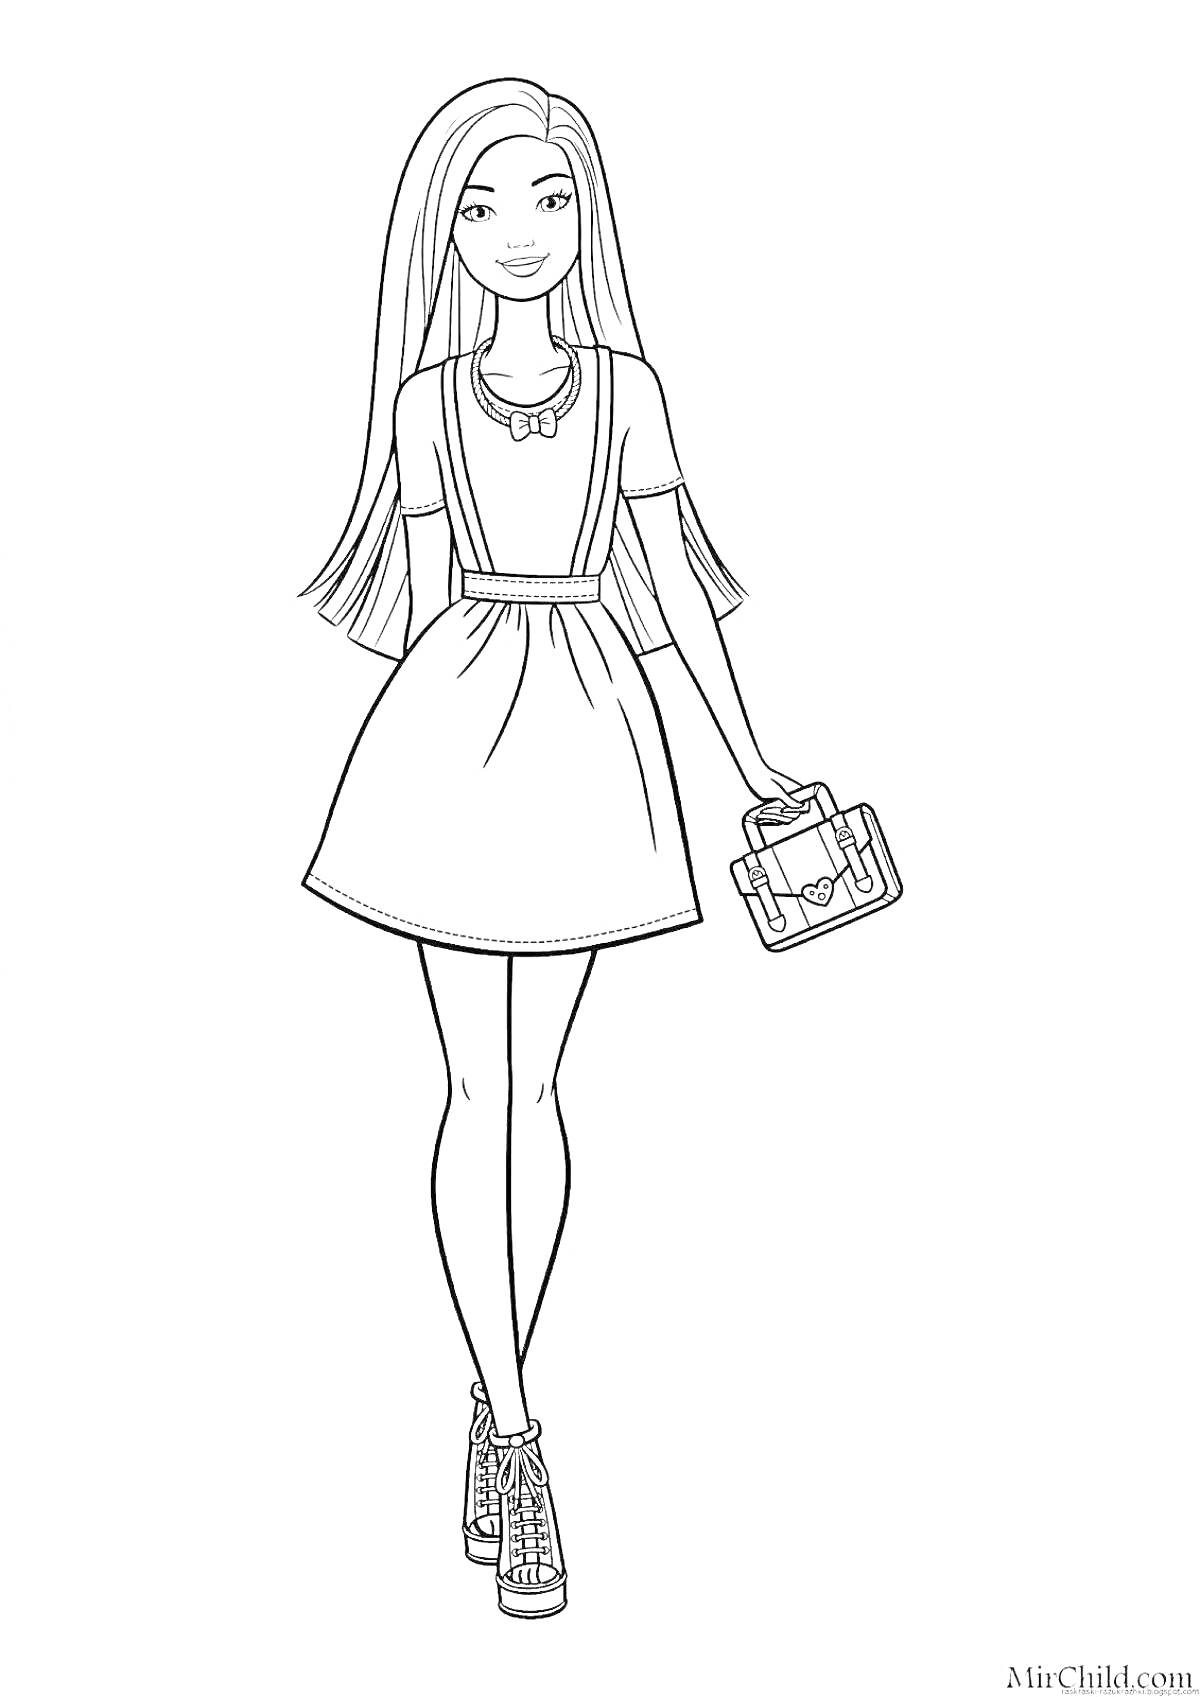 Раскраска Девочка с длинными волосами в платье с бантиком, сумочкой и ботильонами